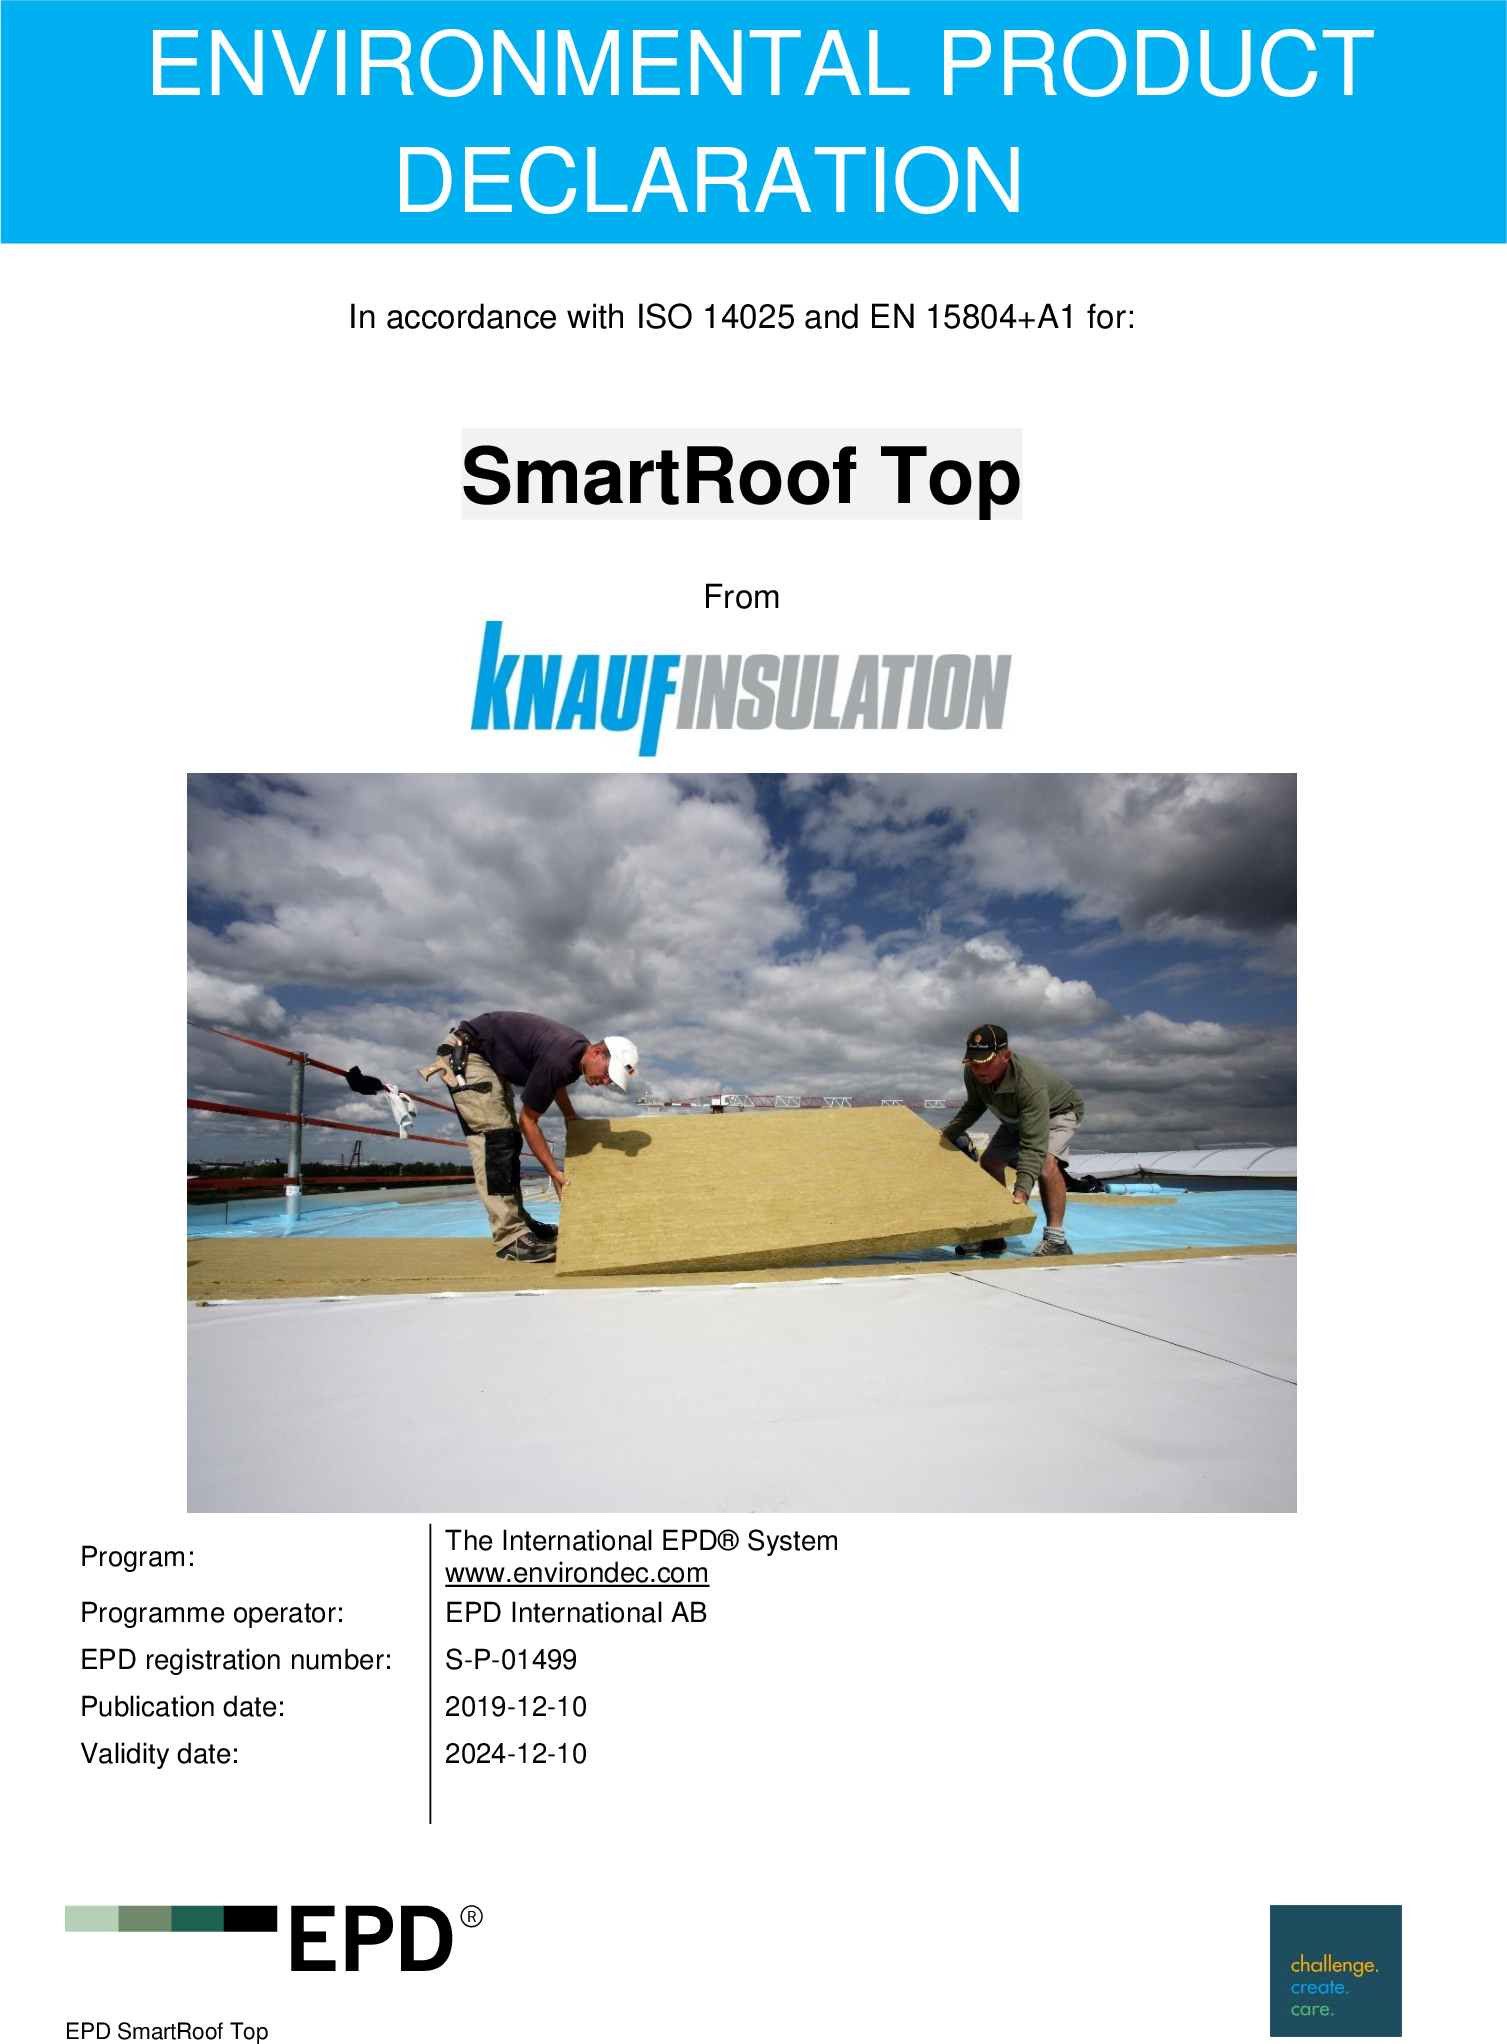 Enviromentální prohlášení o produktu (EPD) - SmartRoof Top